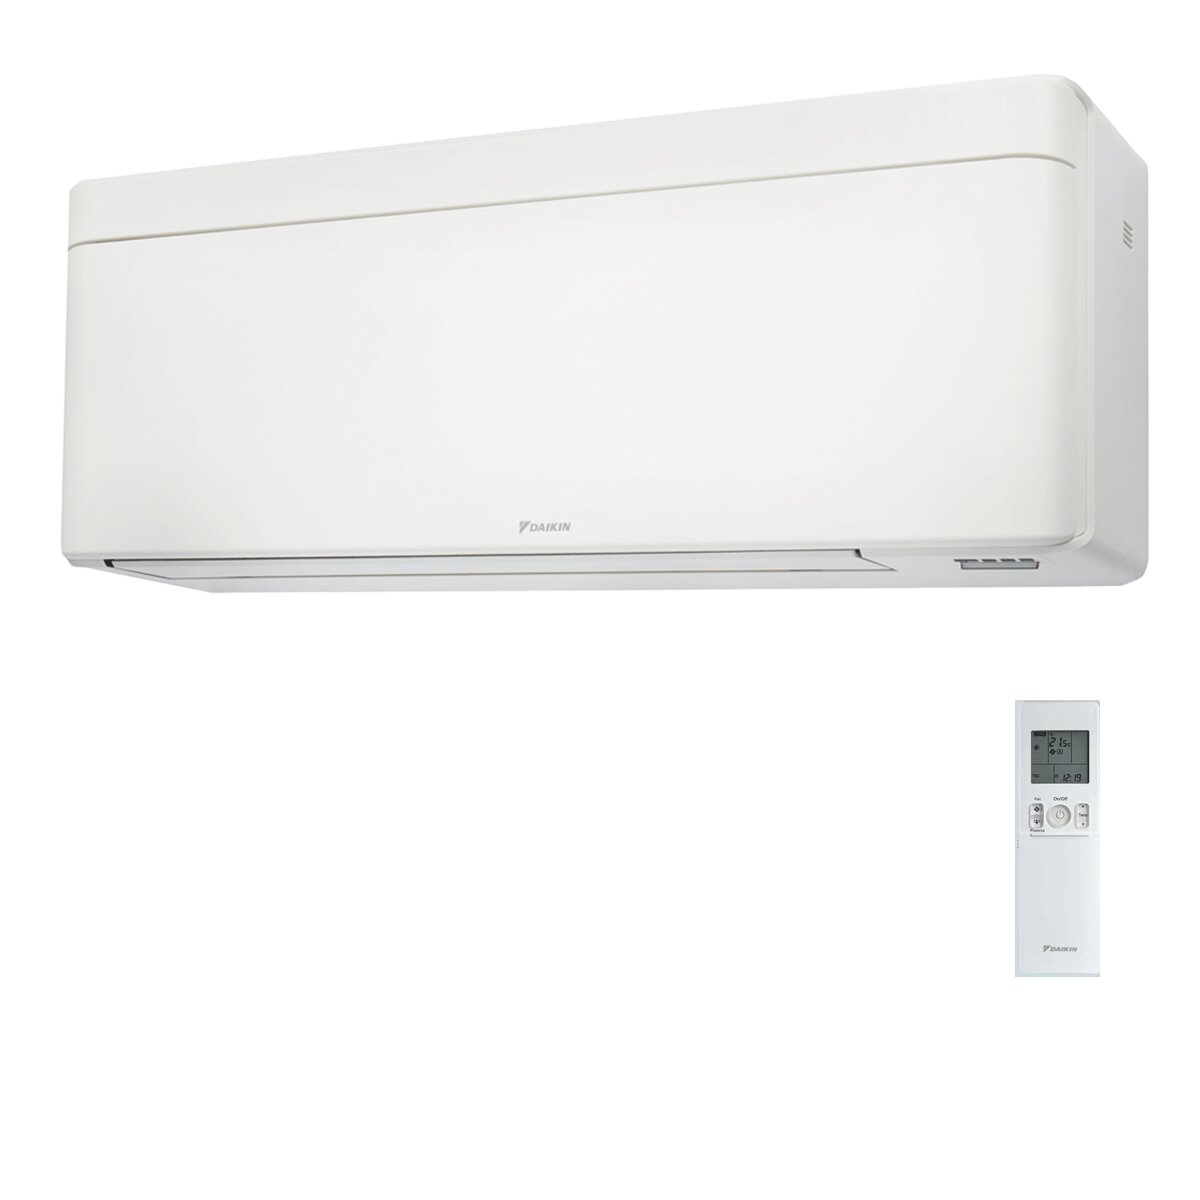 Daikin Stylish White trial split air conditioner 7000+7000+15000 BTU inverter A++ wifi external unit 6.8 kW